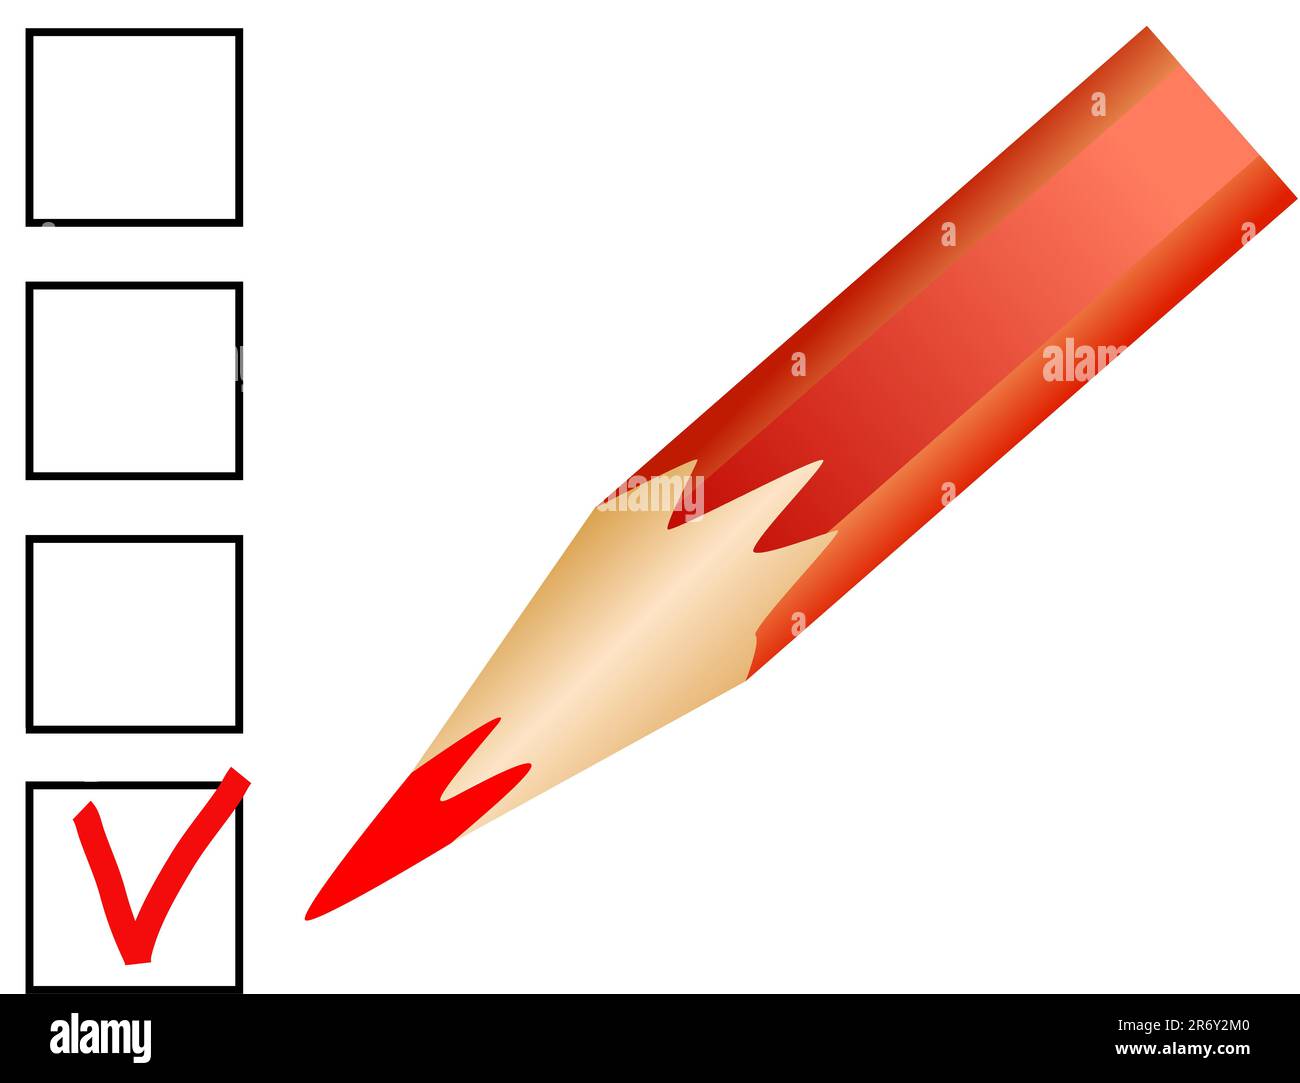 Bestätigung durch einen roten Bleistift auf dem weißen Formular Stock Vektor